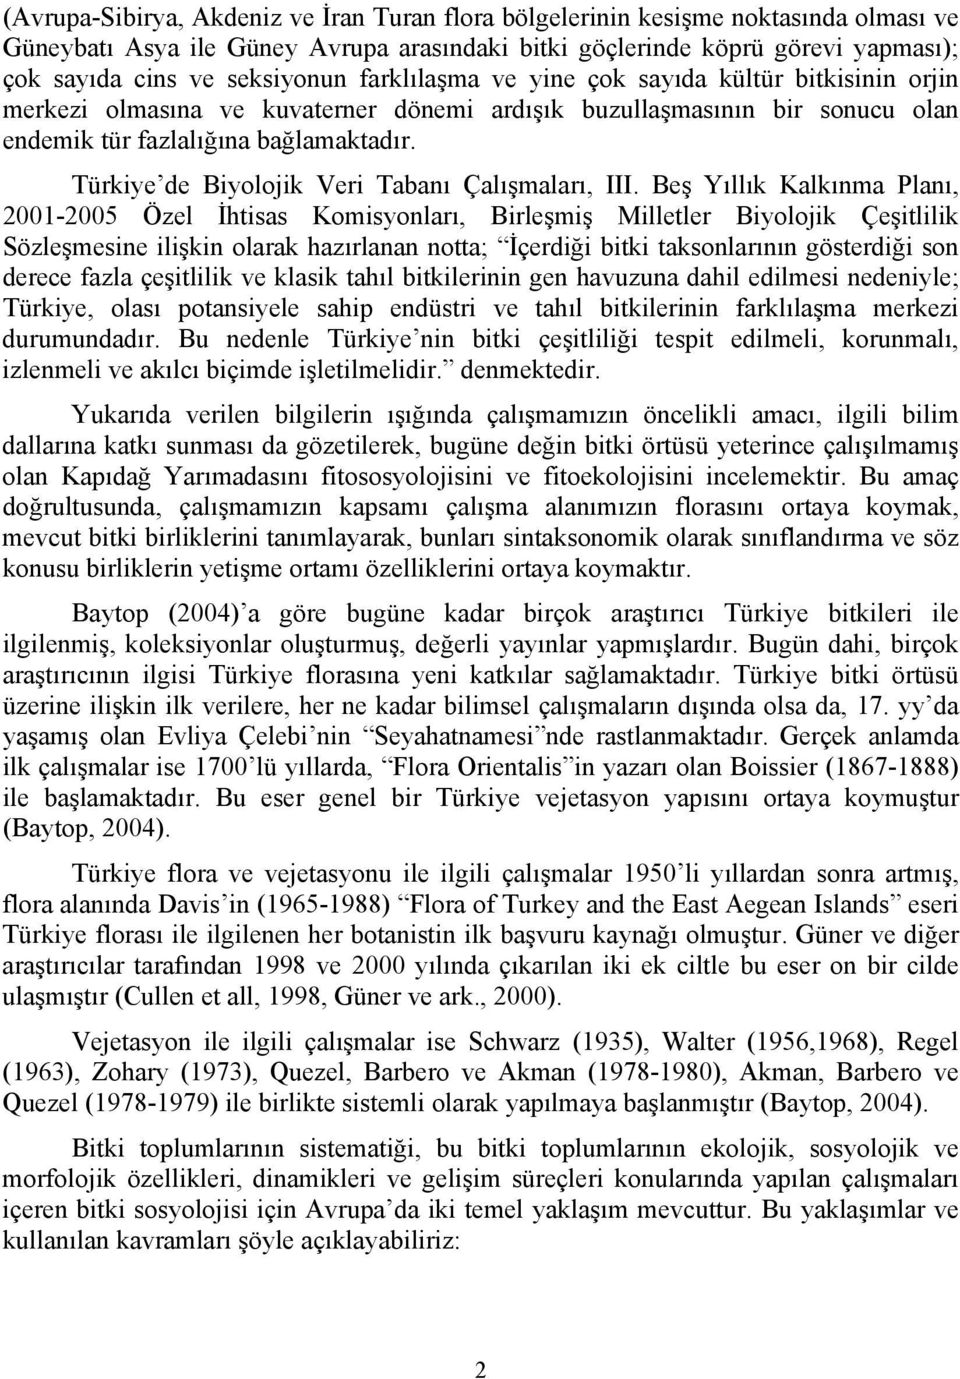 Türkiye de Biyolojik Veri Tabanı Çalışmaları, III.